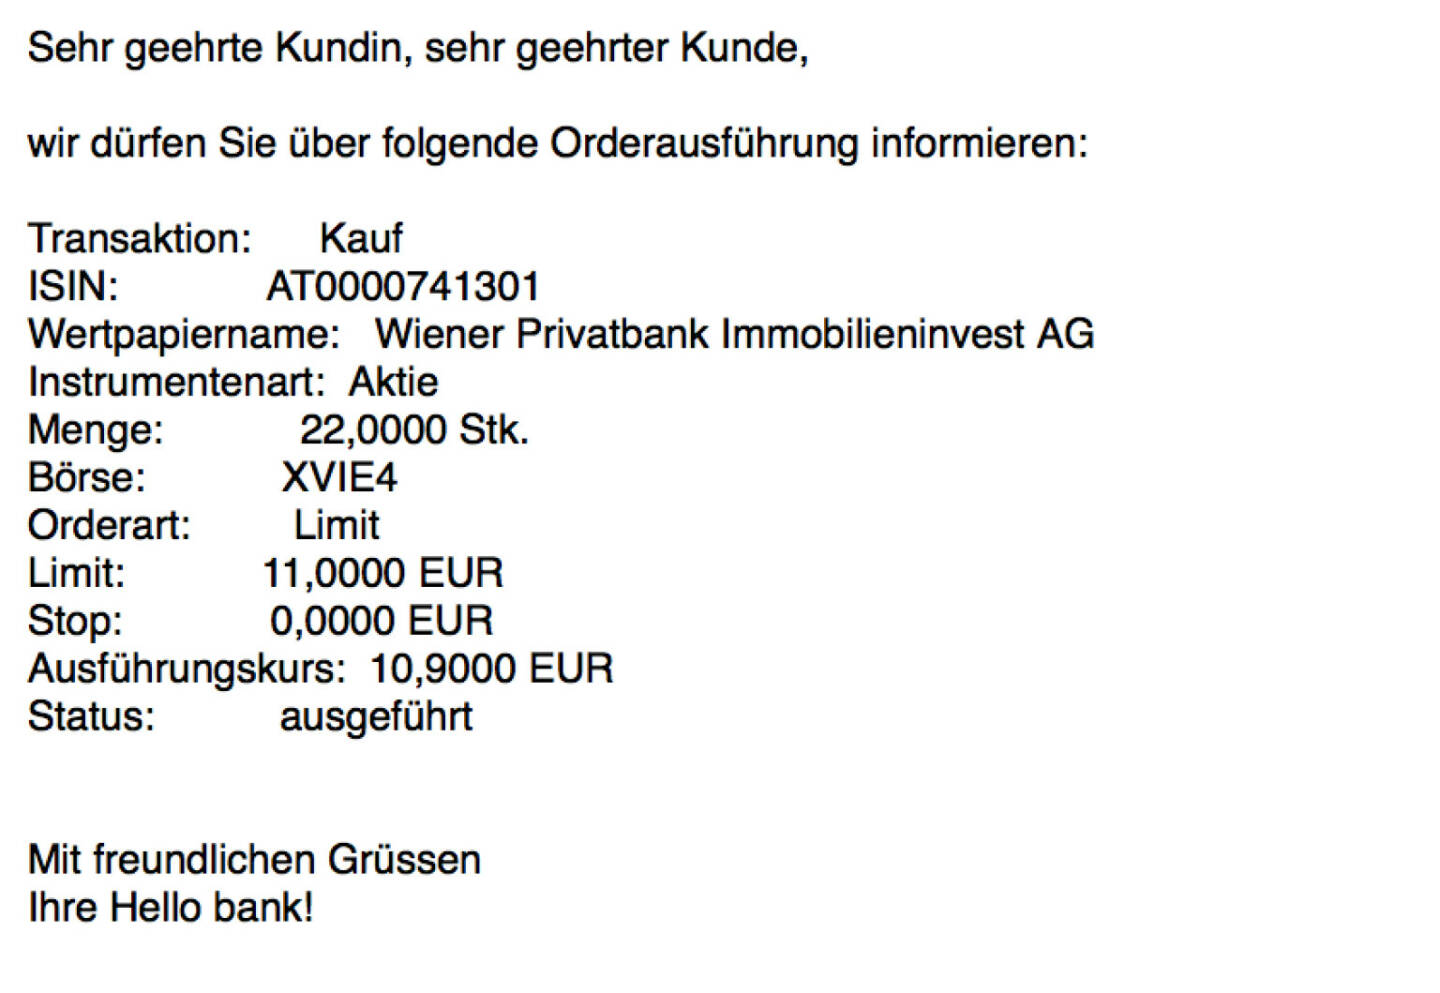 Kauf Wiener Privatbank für #100100hello (Teilausführungen)